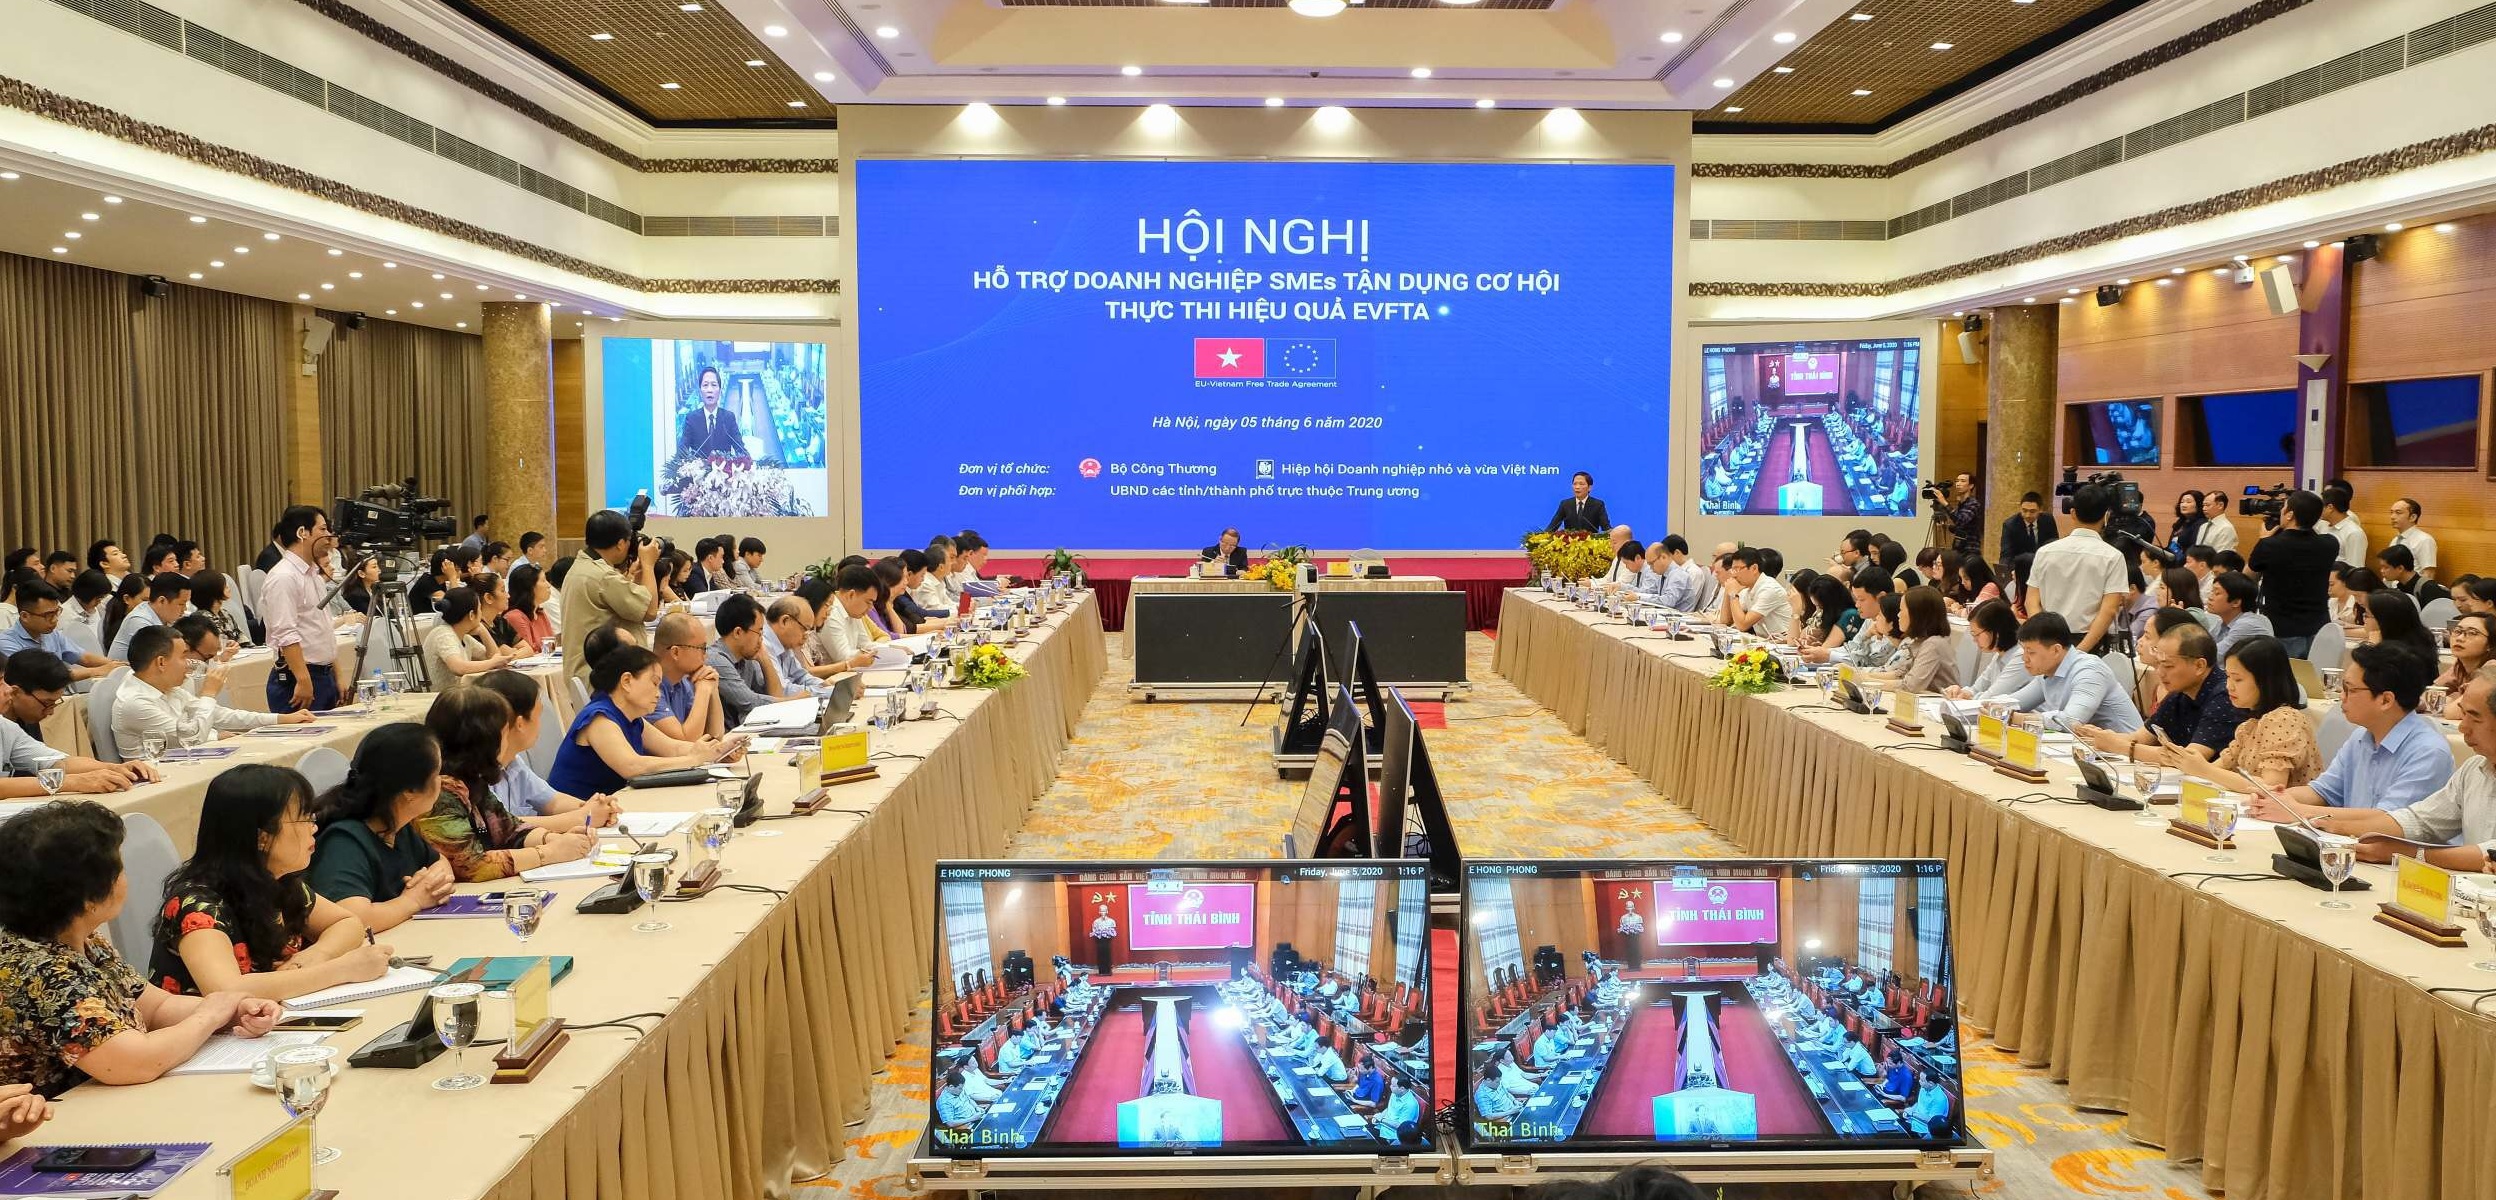 Lắp đặt phòng họp trực tuyến, âm thanh hội thảo cho đài truyền hình Việt Nam VTV